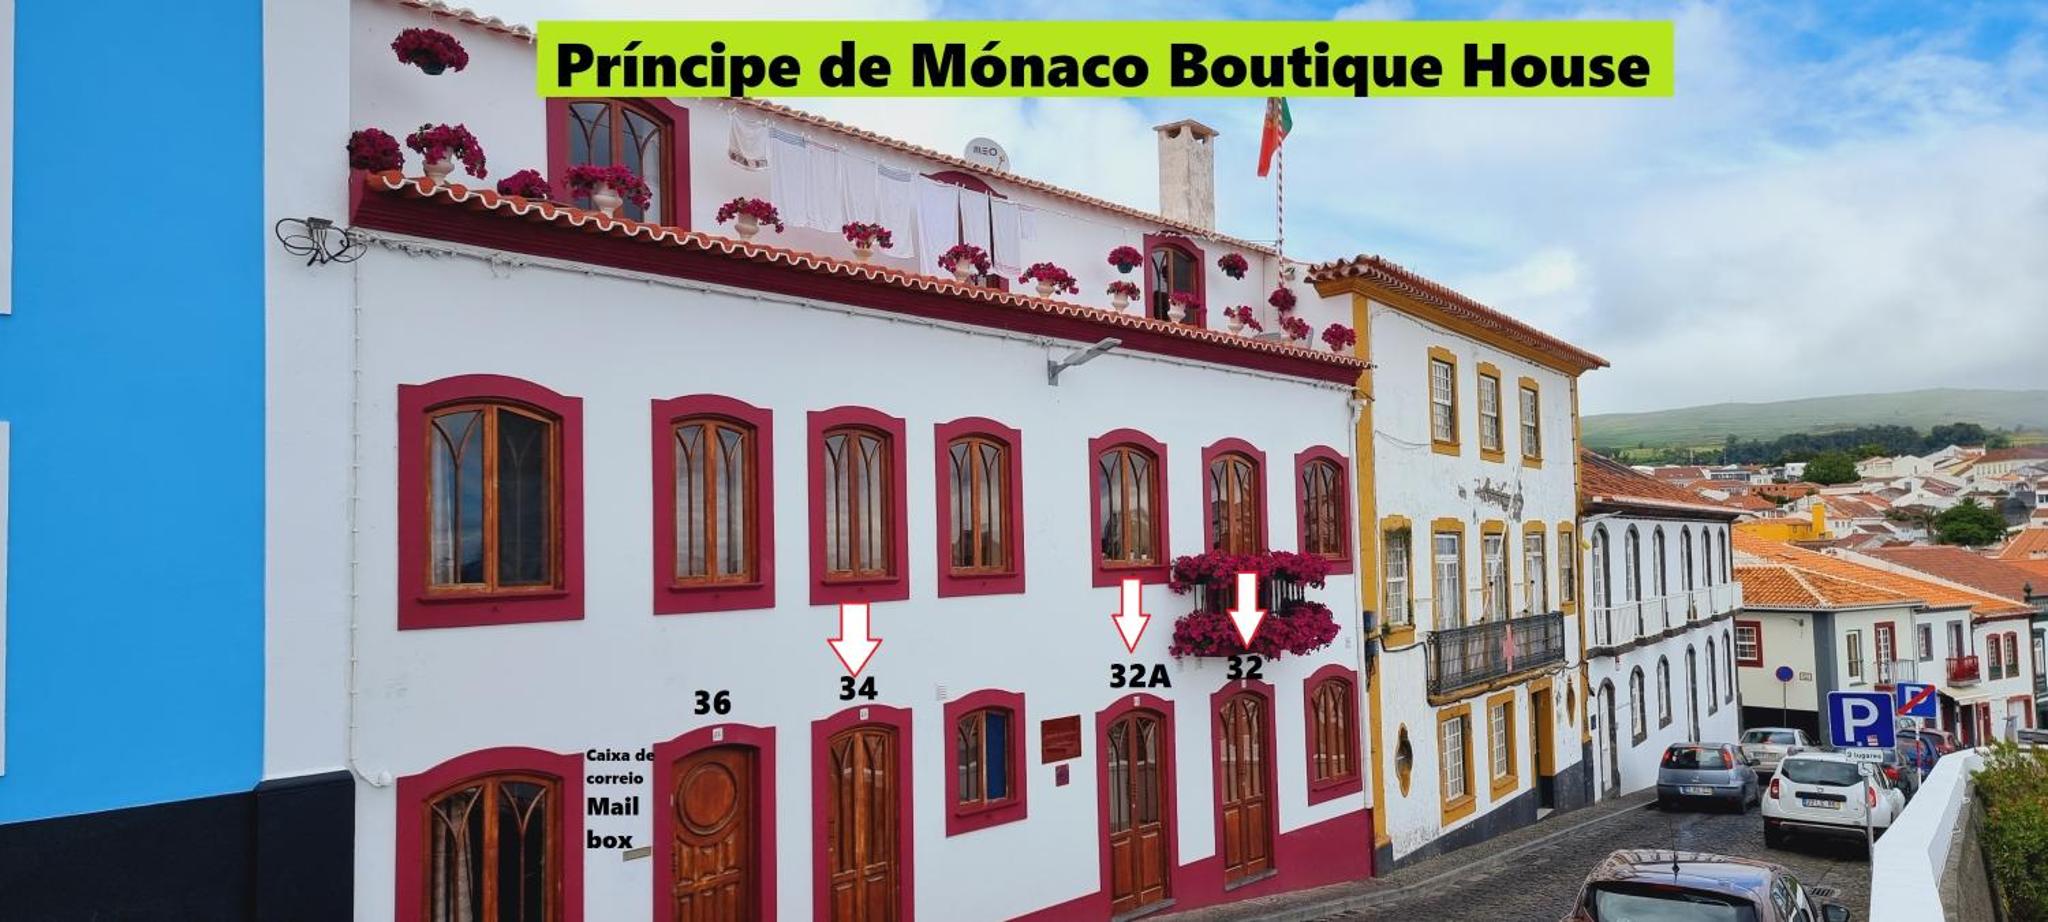 Príncipe de Mónaco Boutique House